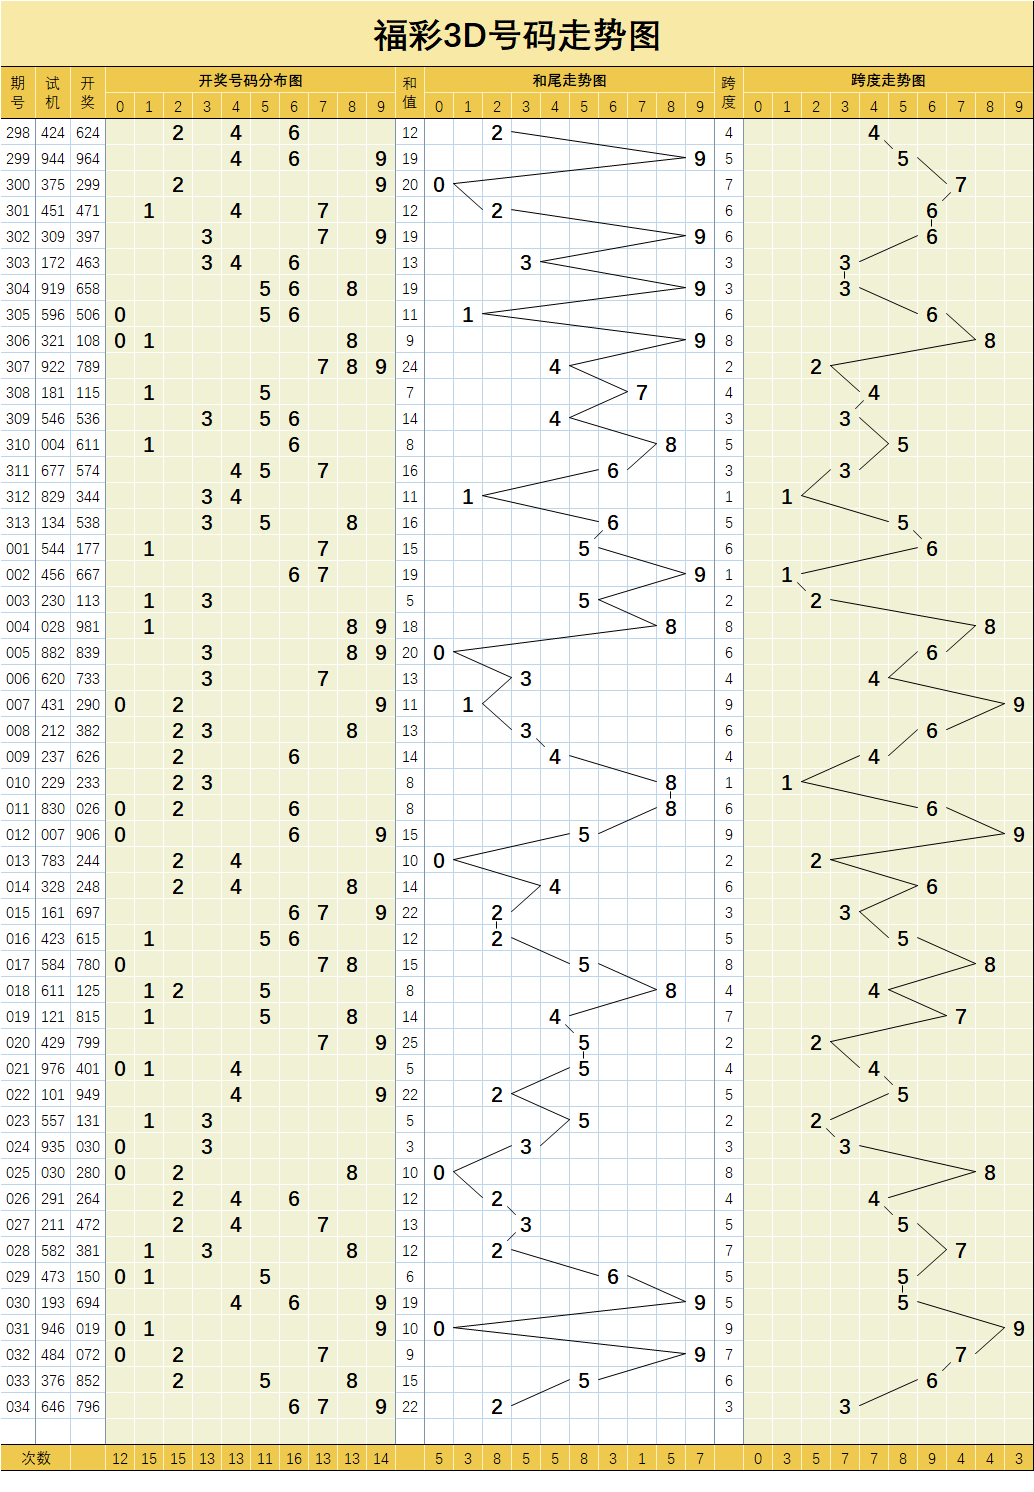 福彩3d034期基础与大中小码分布走势图